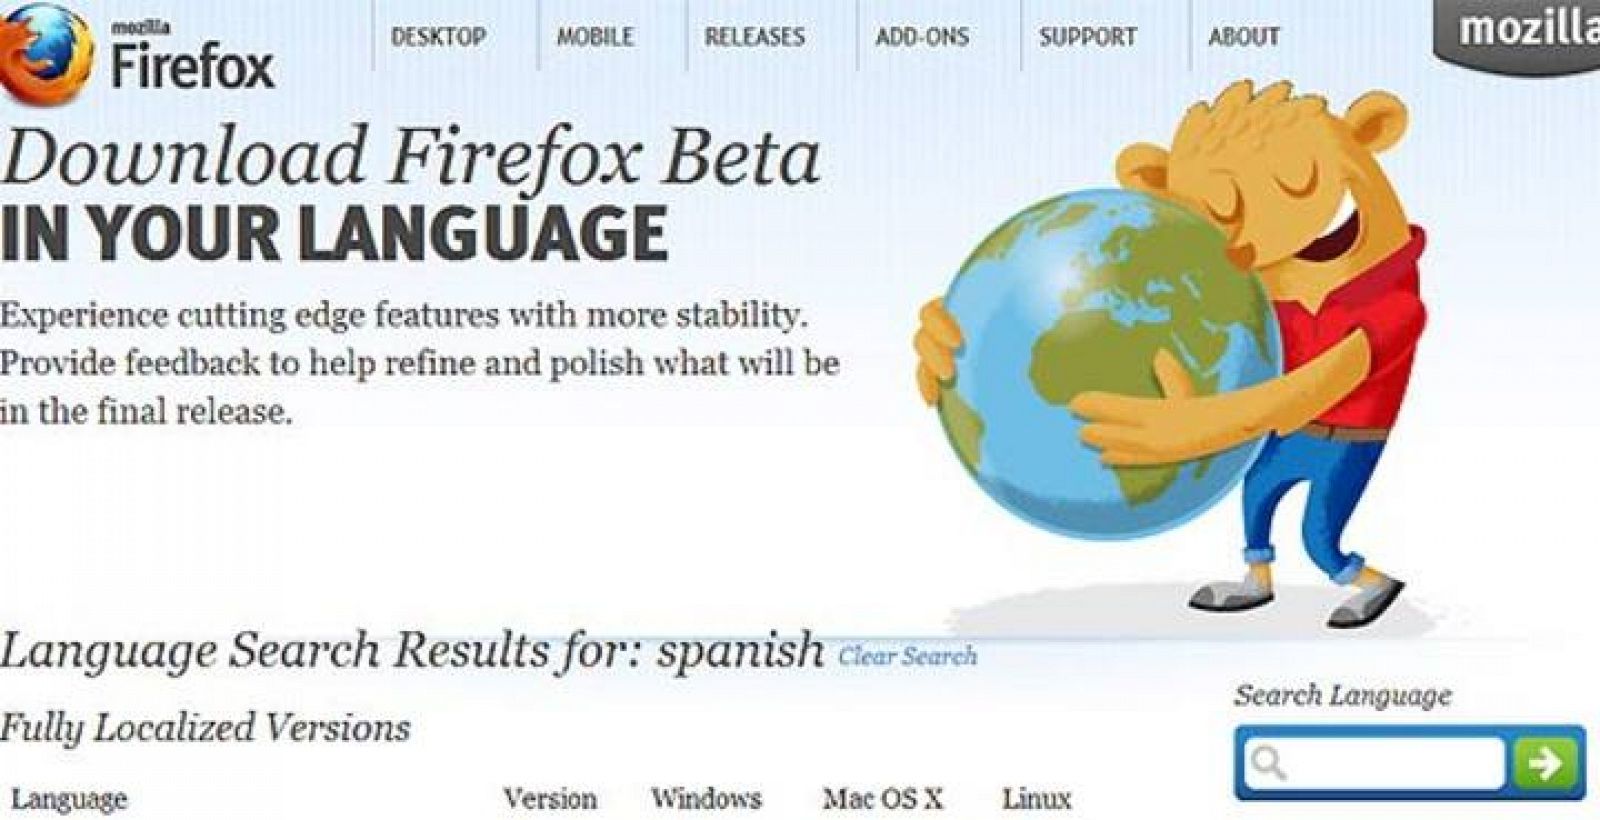 Firefox 8 estará disponible oficialmente a partir de mañana martes 8 de noviembre